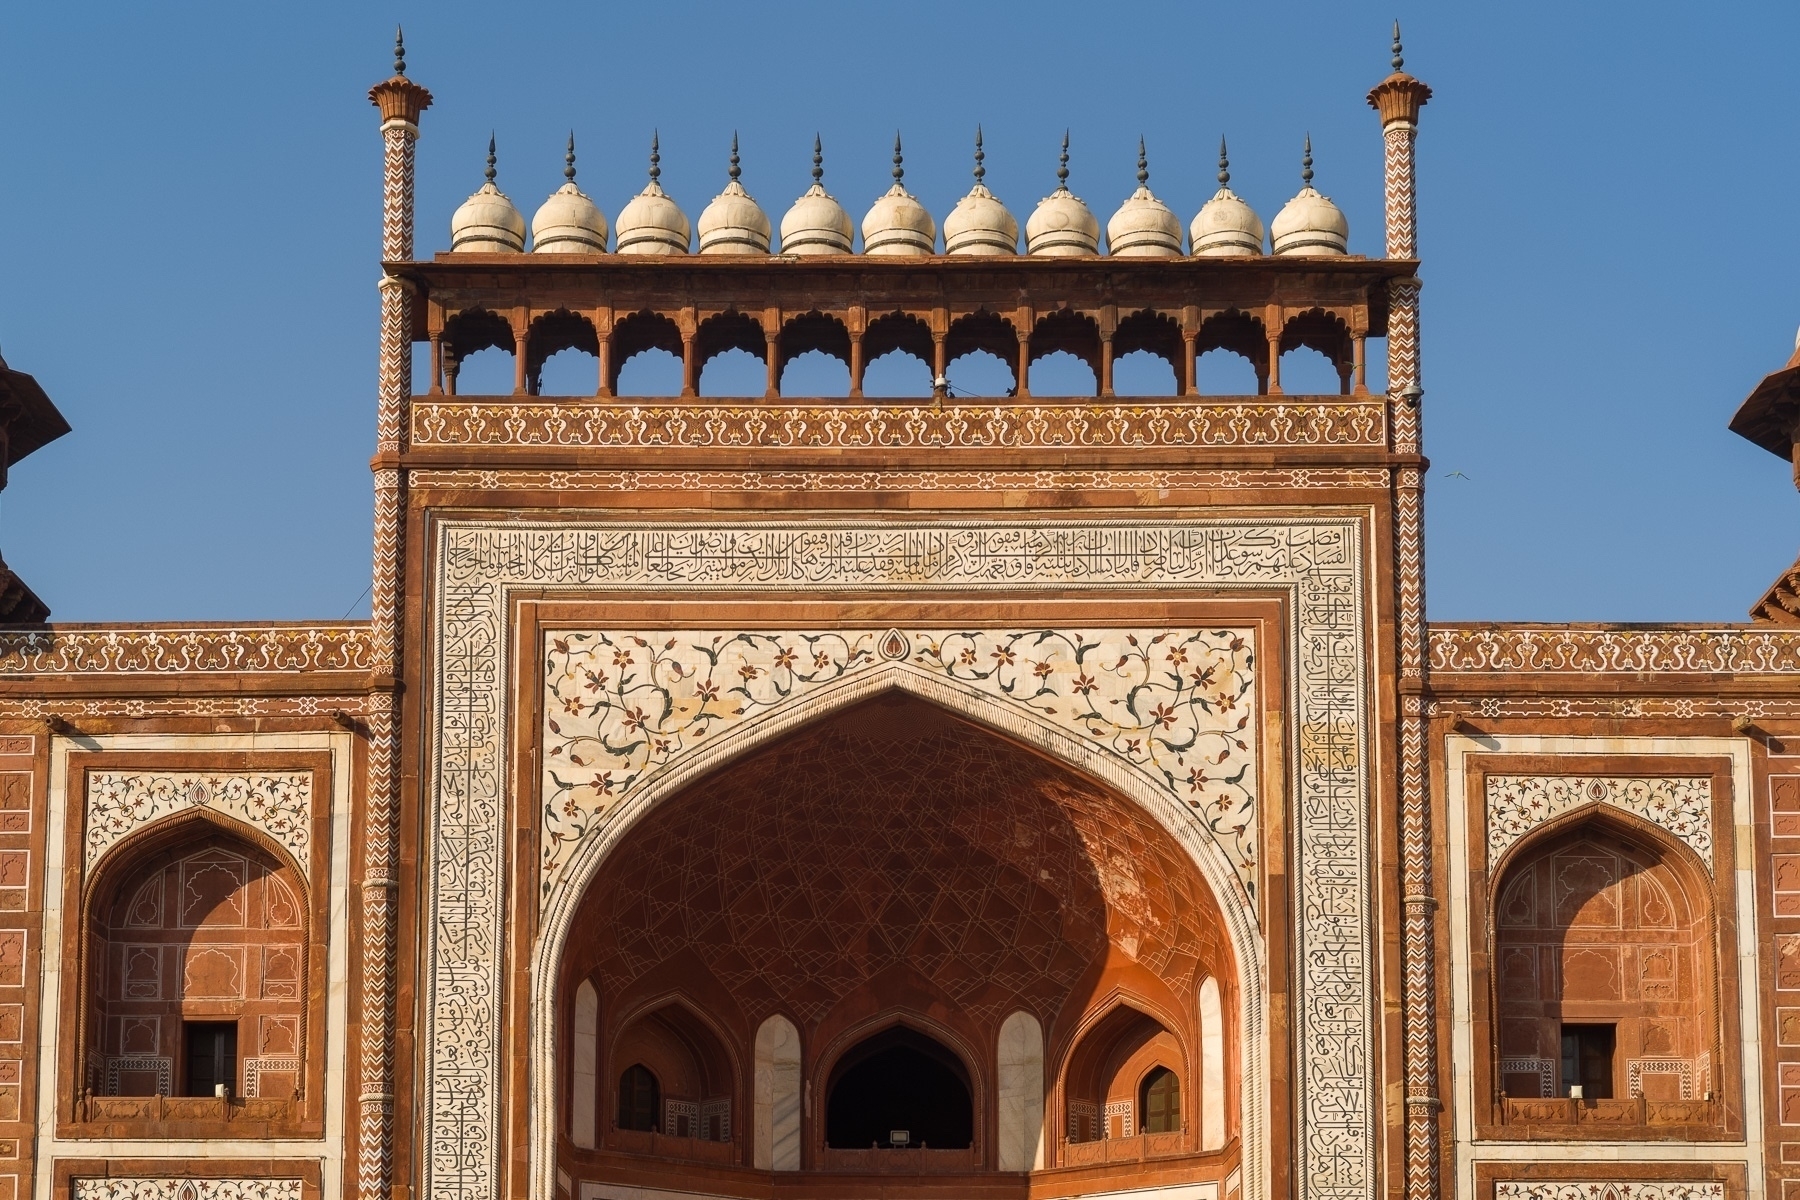 Main gate to the Taj Mahal